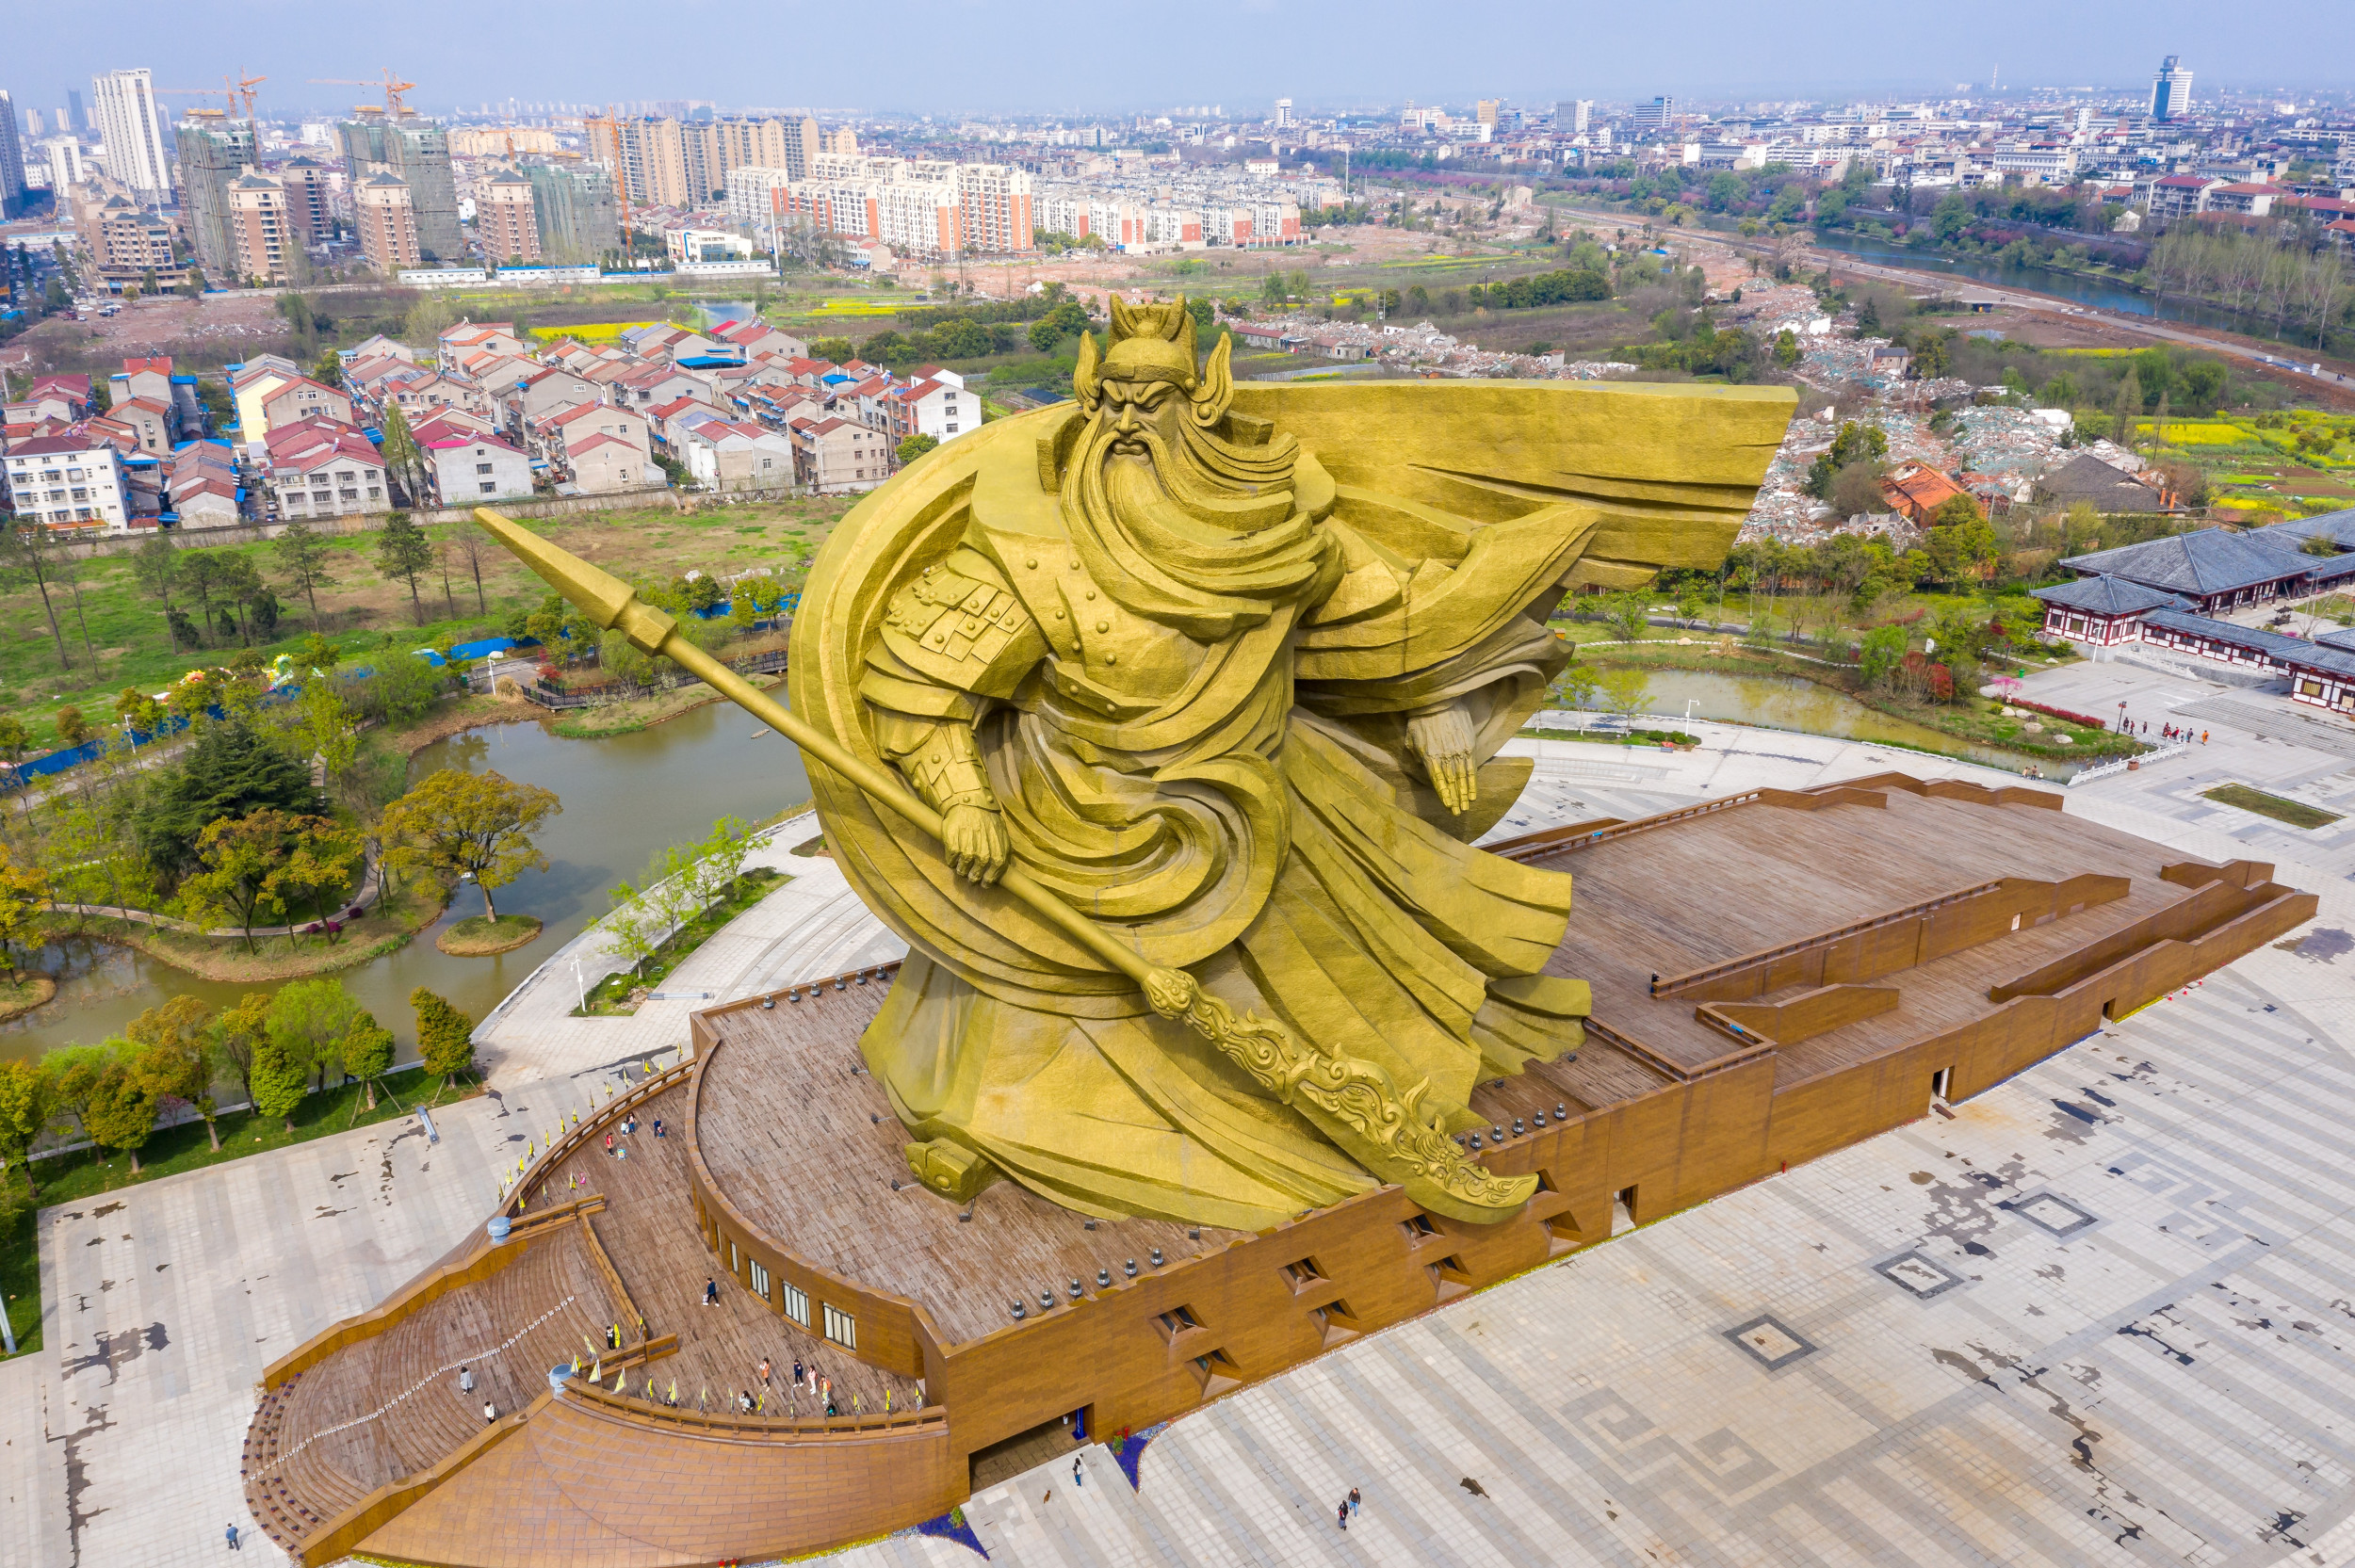 8.9" Sammeln China Paktong Wu Reichtum Gott Guanyu Halten Breitschwert Statue 